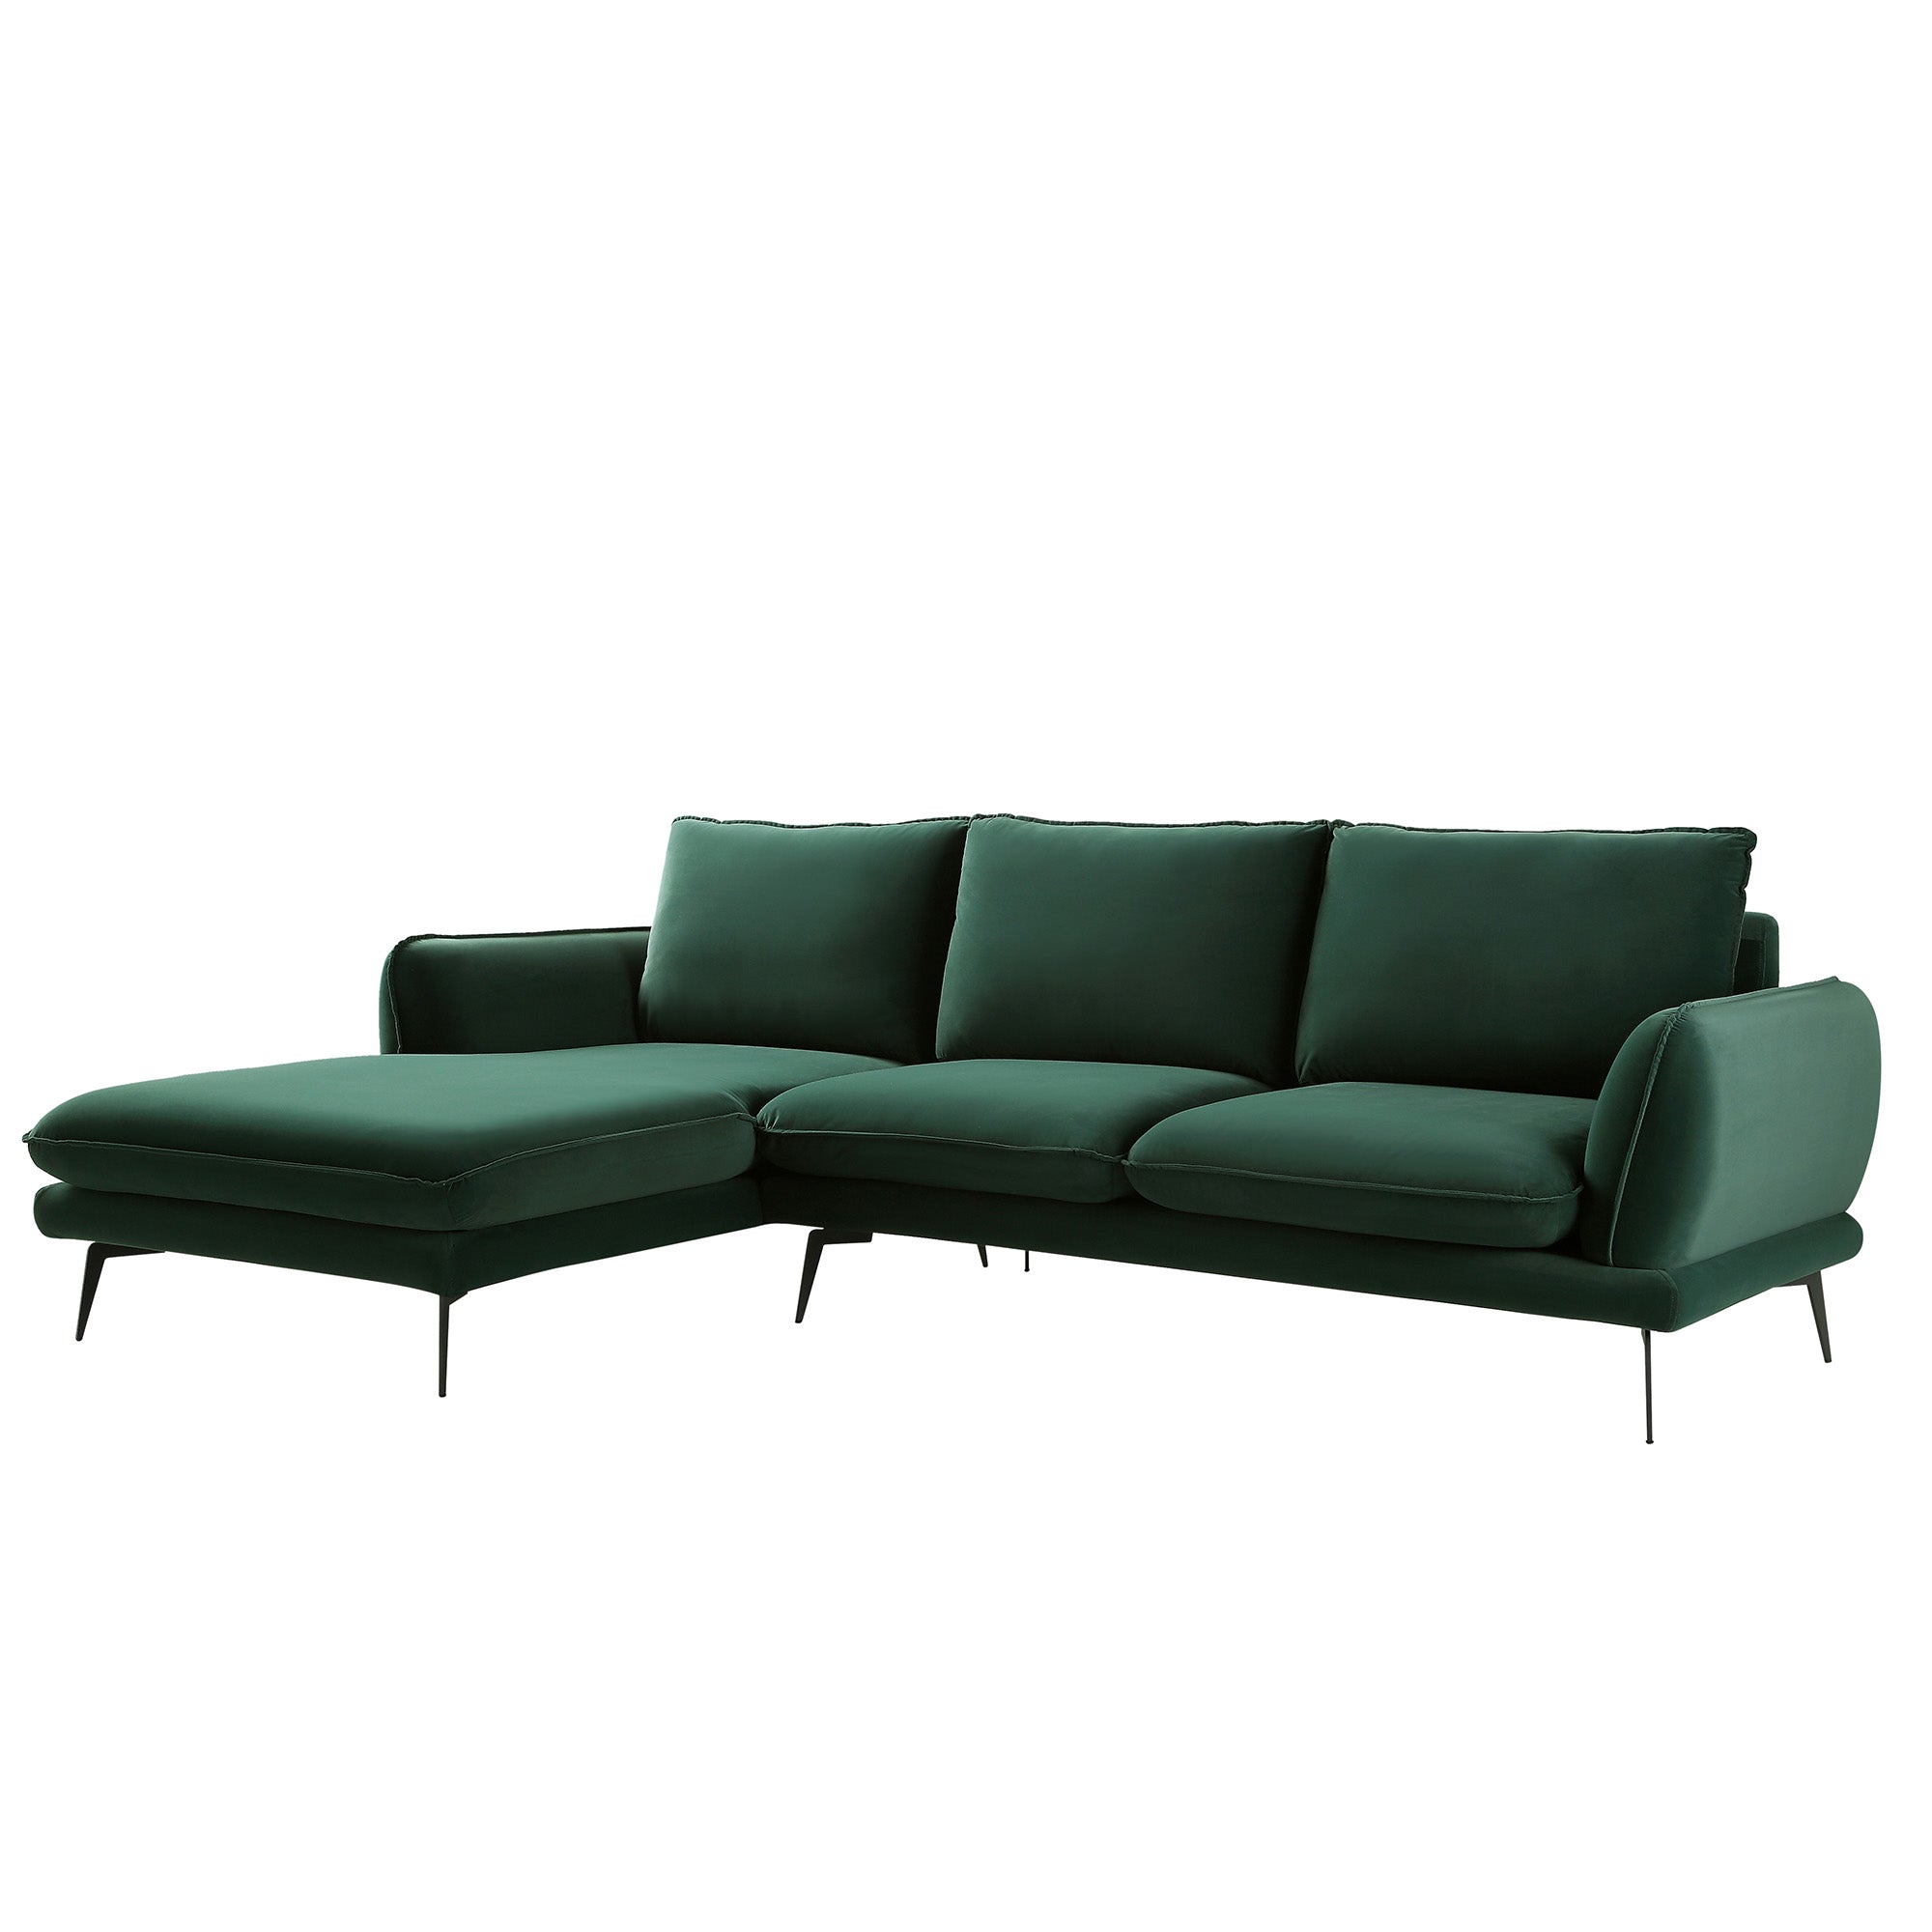 Obriel Forest Green Velvet Sofa, Grande Chaise Sofa Left Hand